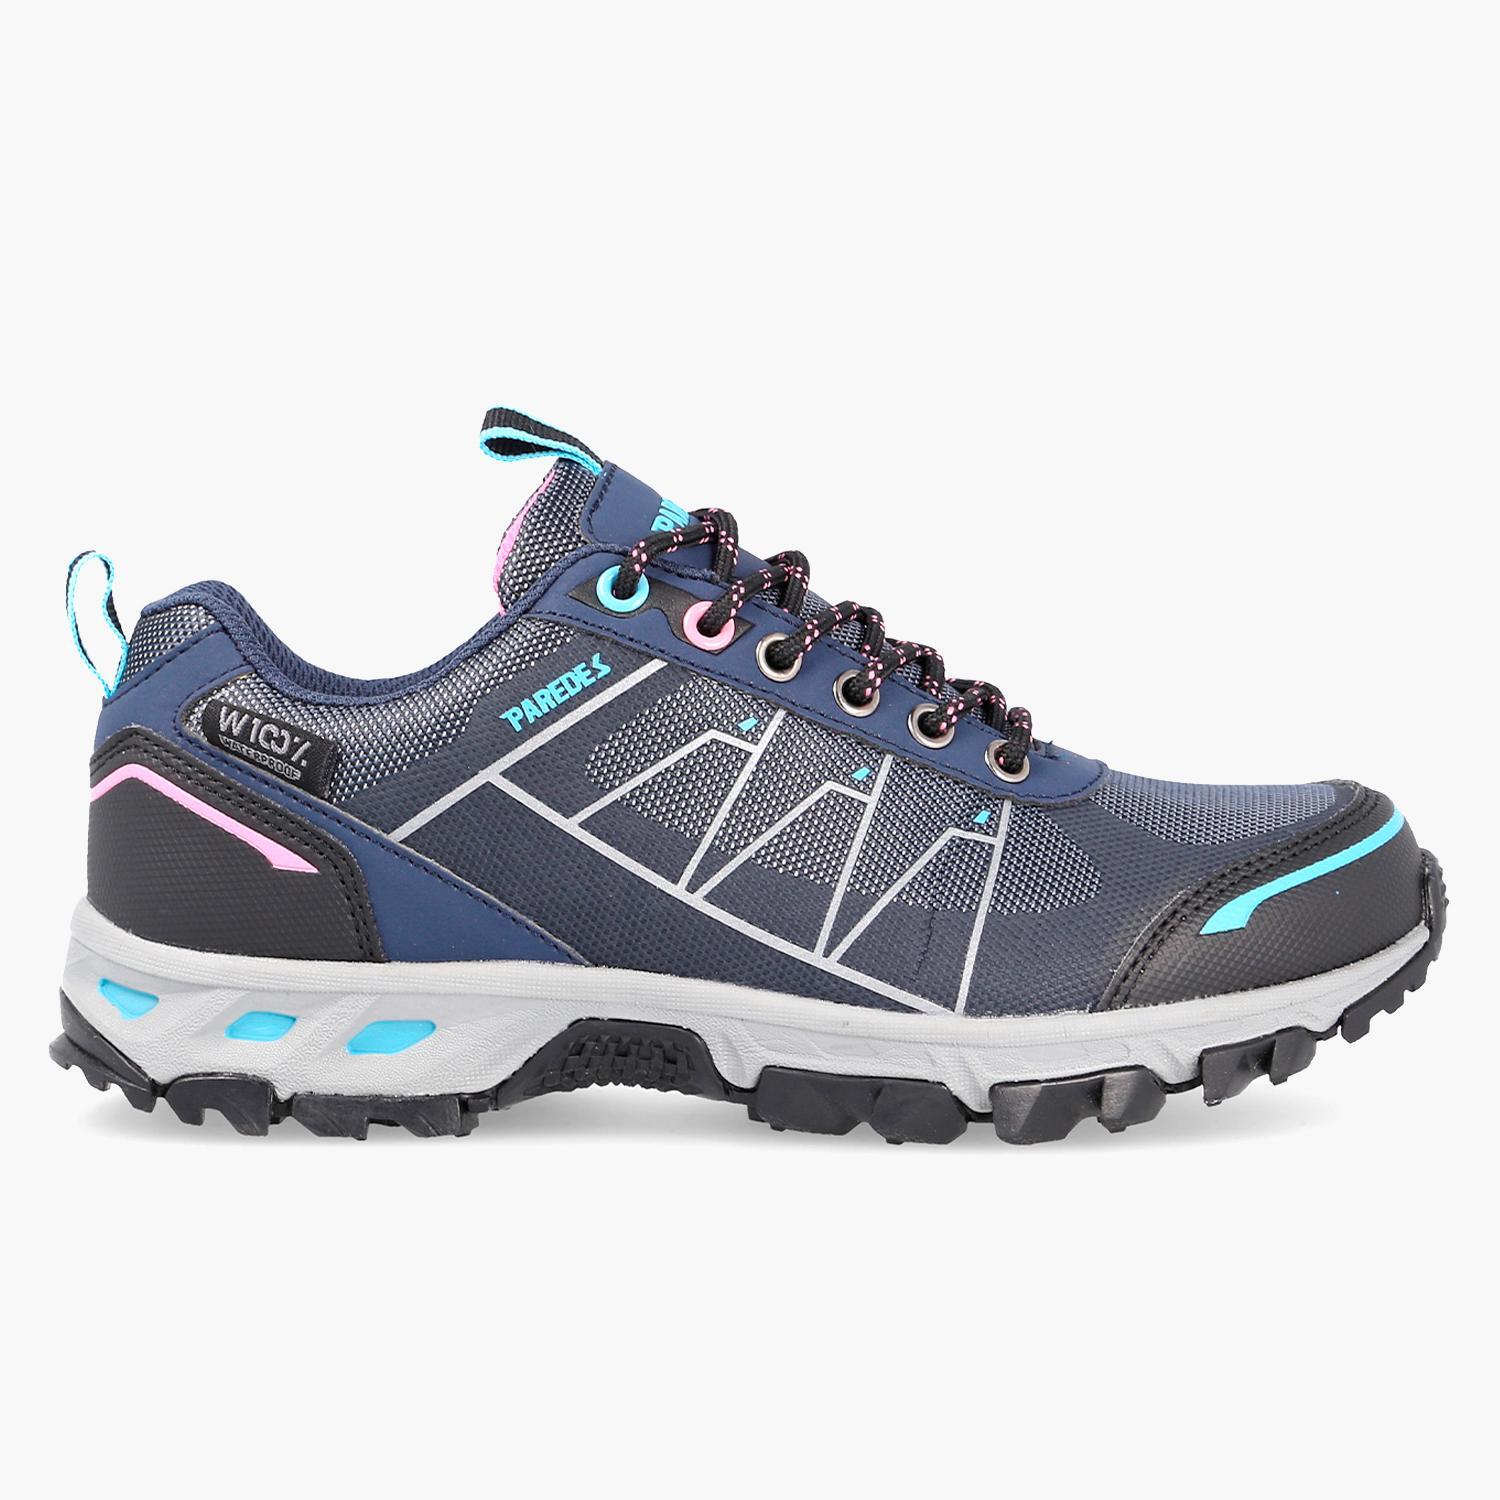 Chaussures Hana - Bleu Marine - Chaussures de randonnée femme sports MKP taille 37